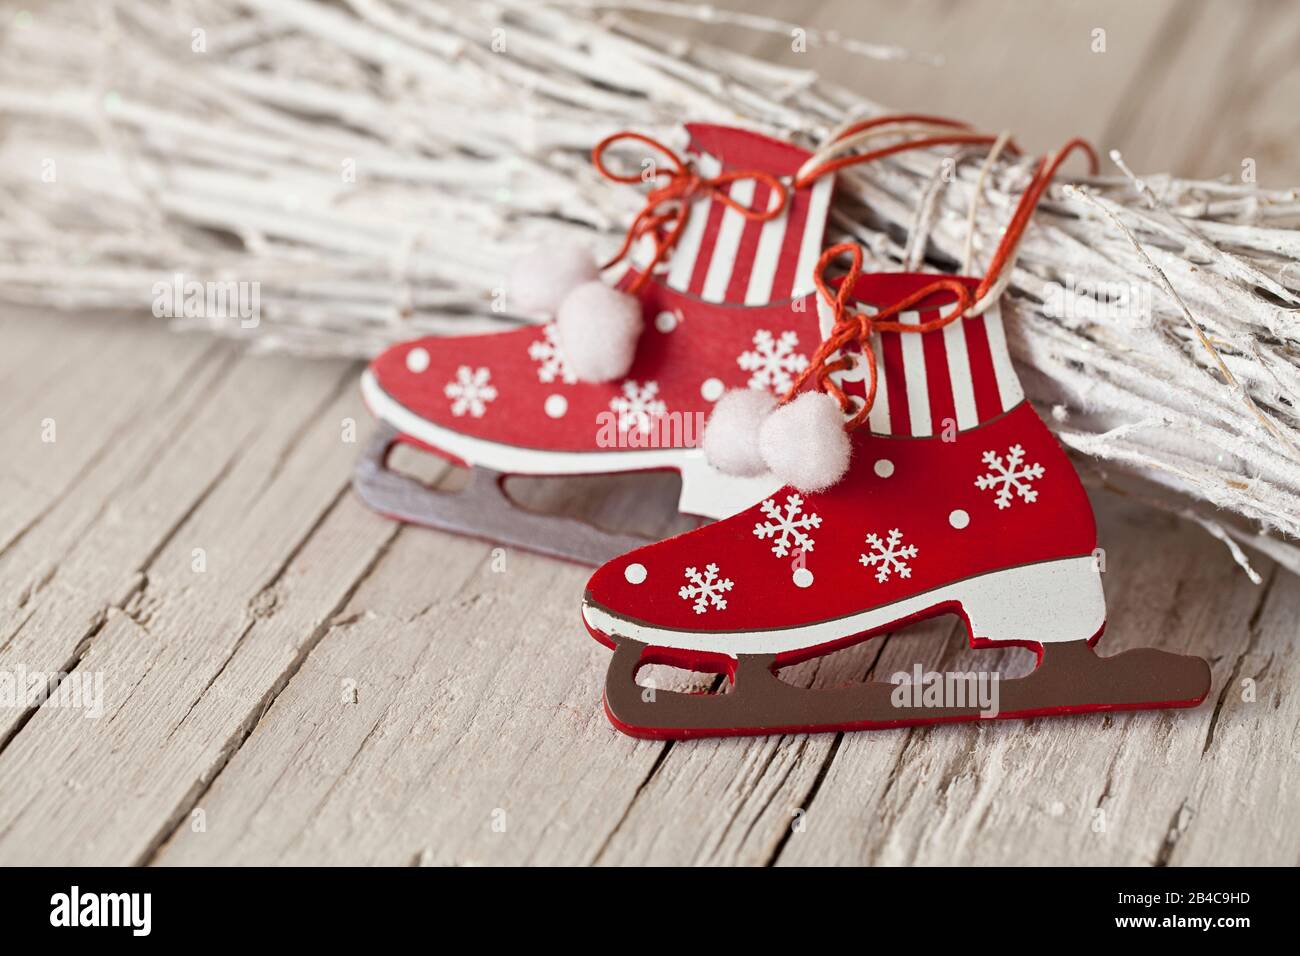 Noël décoratif toujours vie style nordique en rouge et blanc avec un joli ornement en forme de skate de glace Banque D'Images